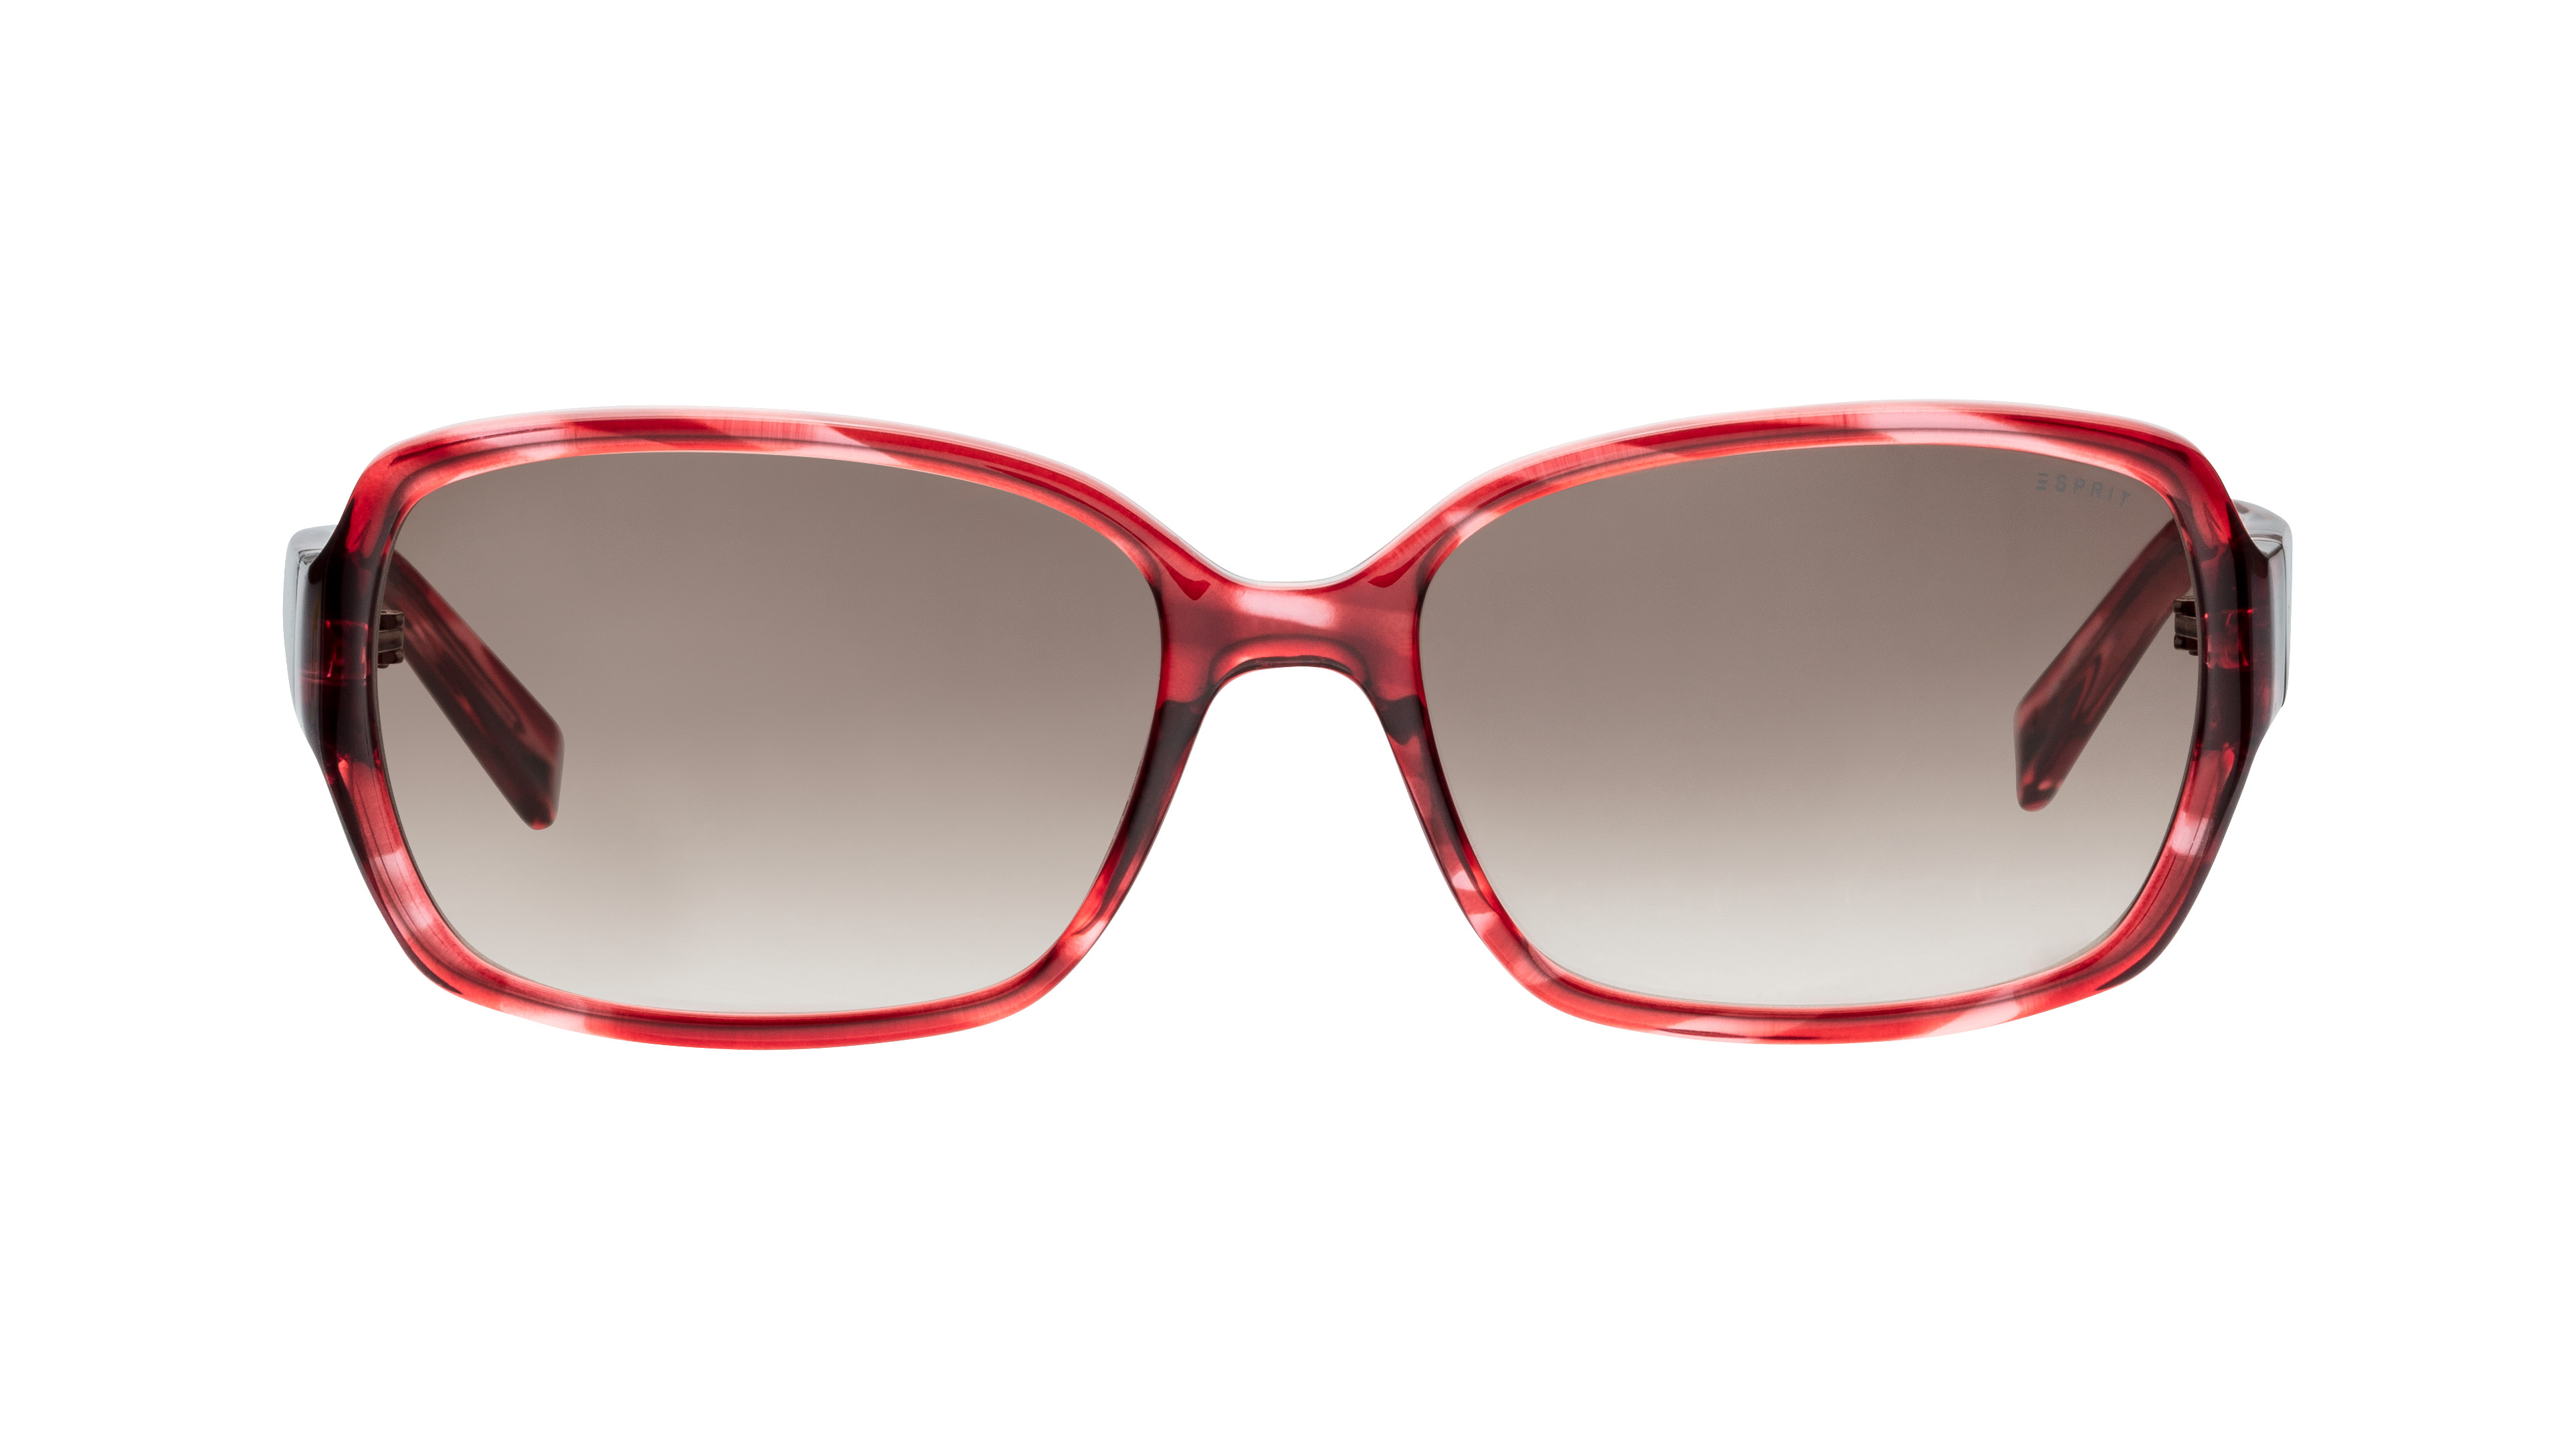 [products.image.front] Esprit 17942 C-531 Sonnenbrille